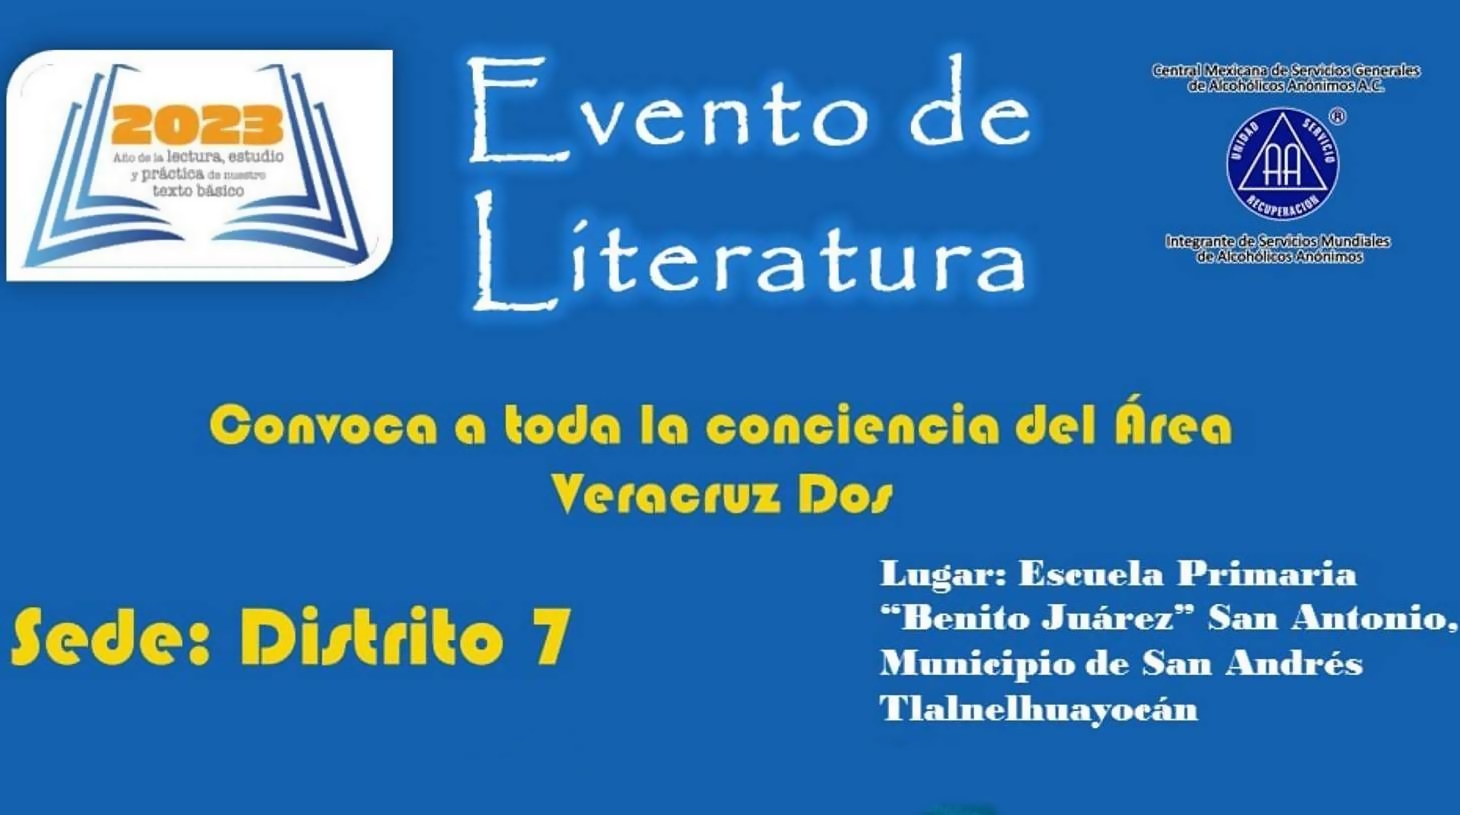 Evento de Literatura, Area Veracruz Dos; Sede Distrito 7